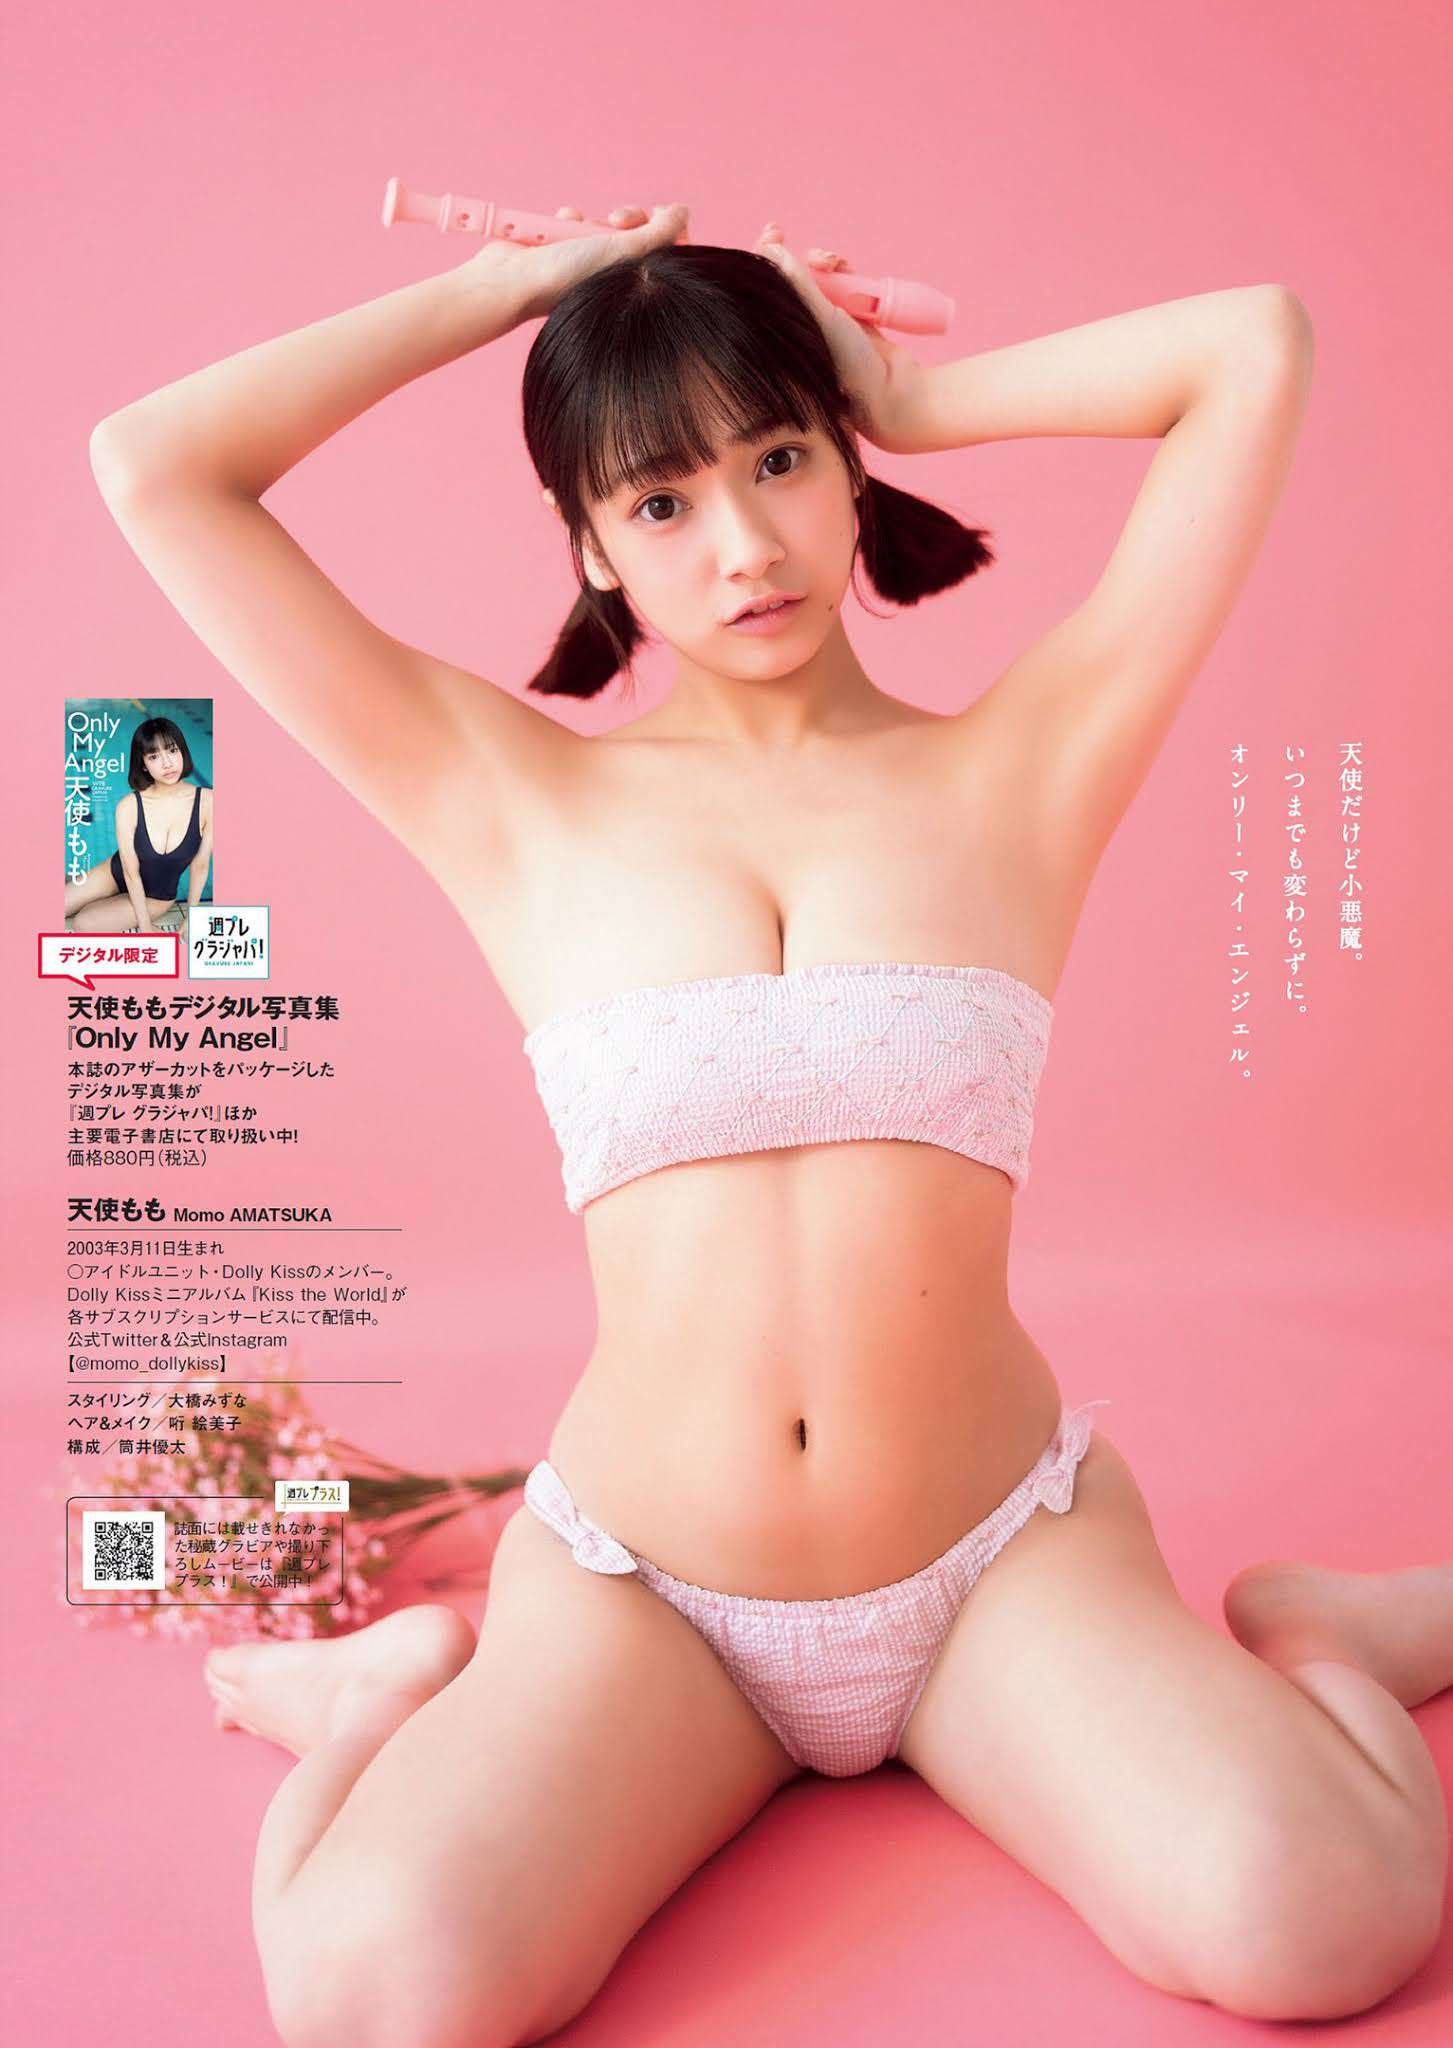 日本少女偶像《天使もも》写真「死库水」-第8张图片